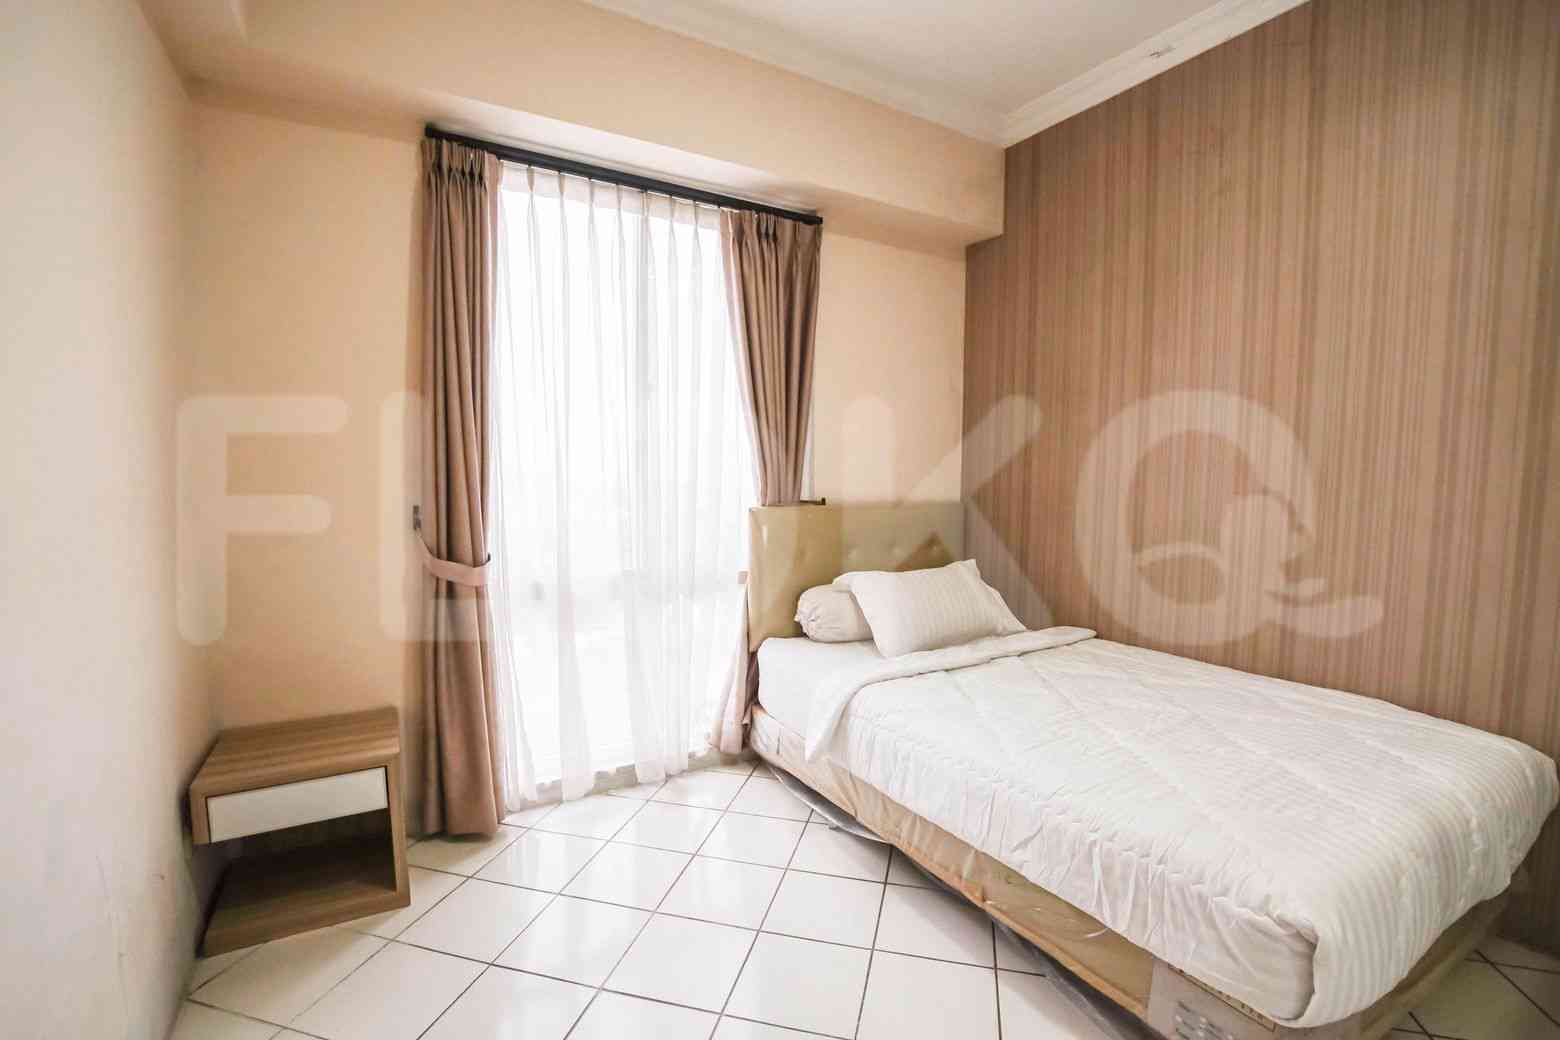 2 Bedroom on 21st Floor for Rent in Puri Casablanca - fte68b 7